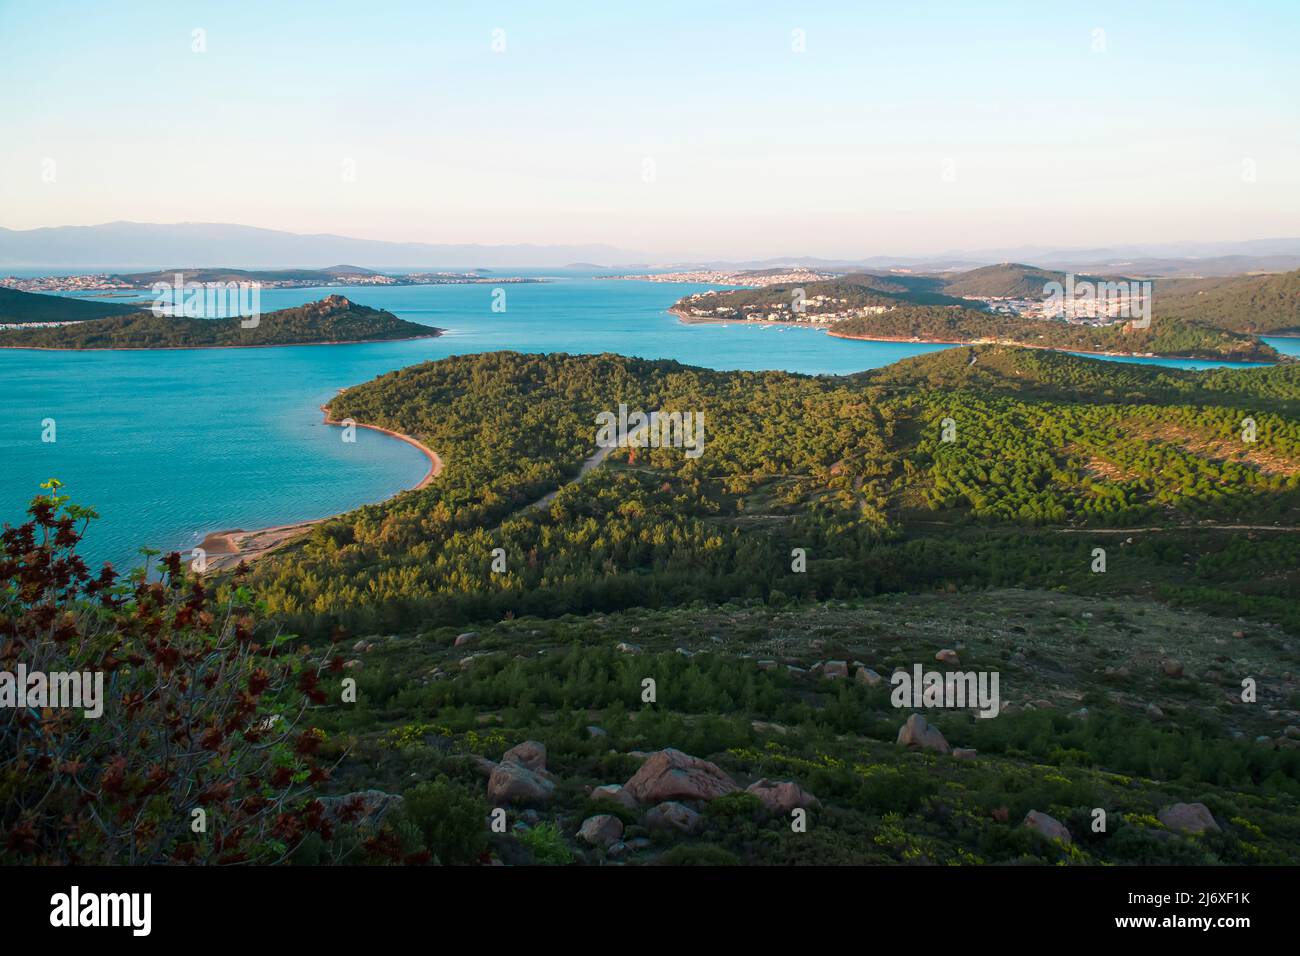 Vista panoramica della costa, del mare azzurro con isole verdi. Visto dal seitan Sofrasi, luogo touristik in Ayvalik Balikesir, Turchia Foto Stock